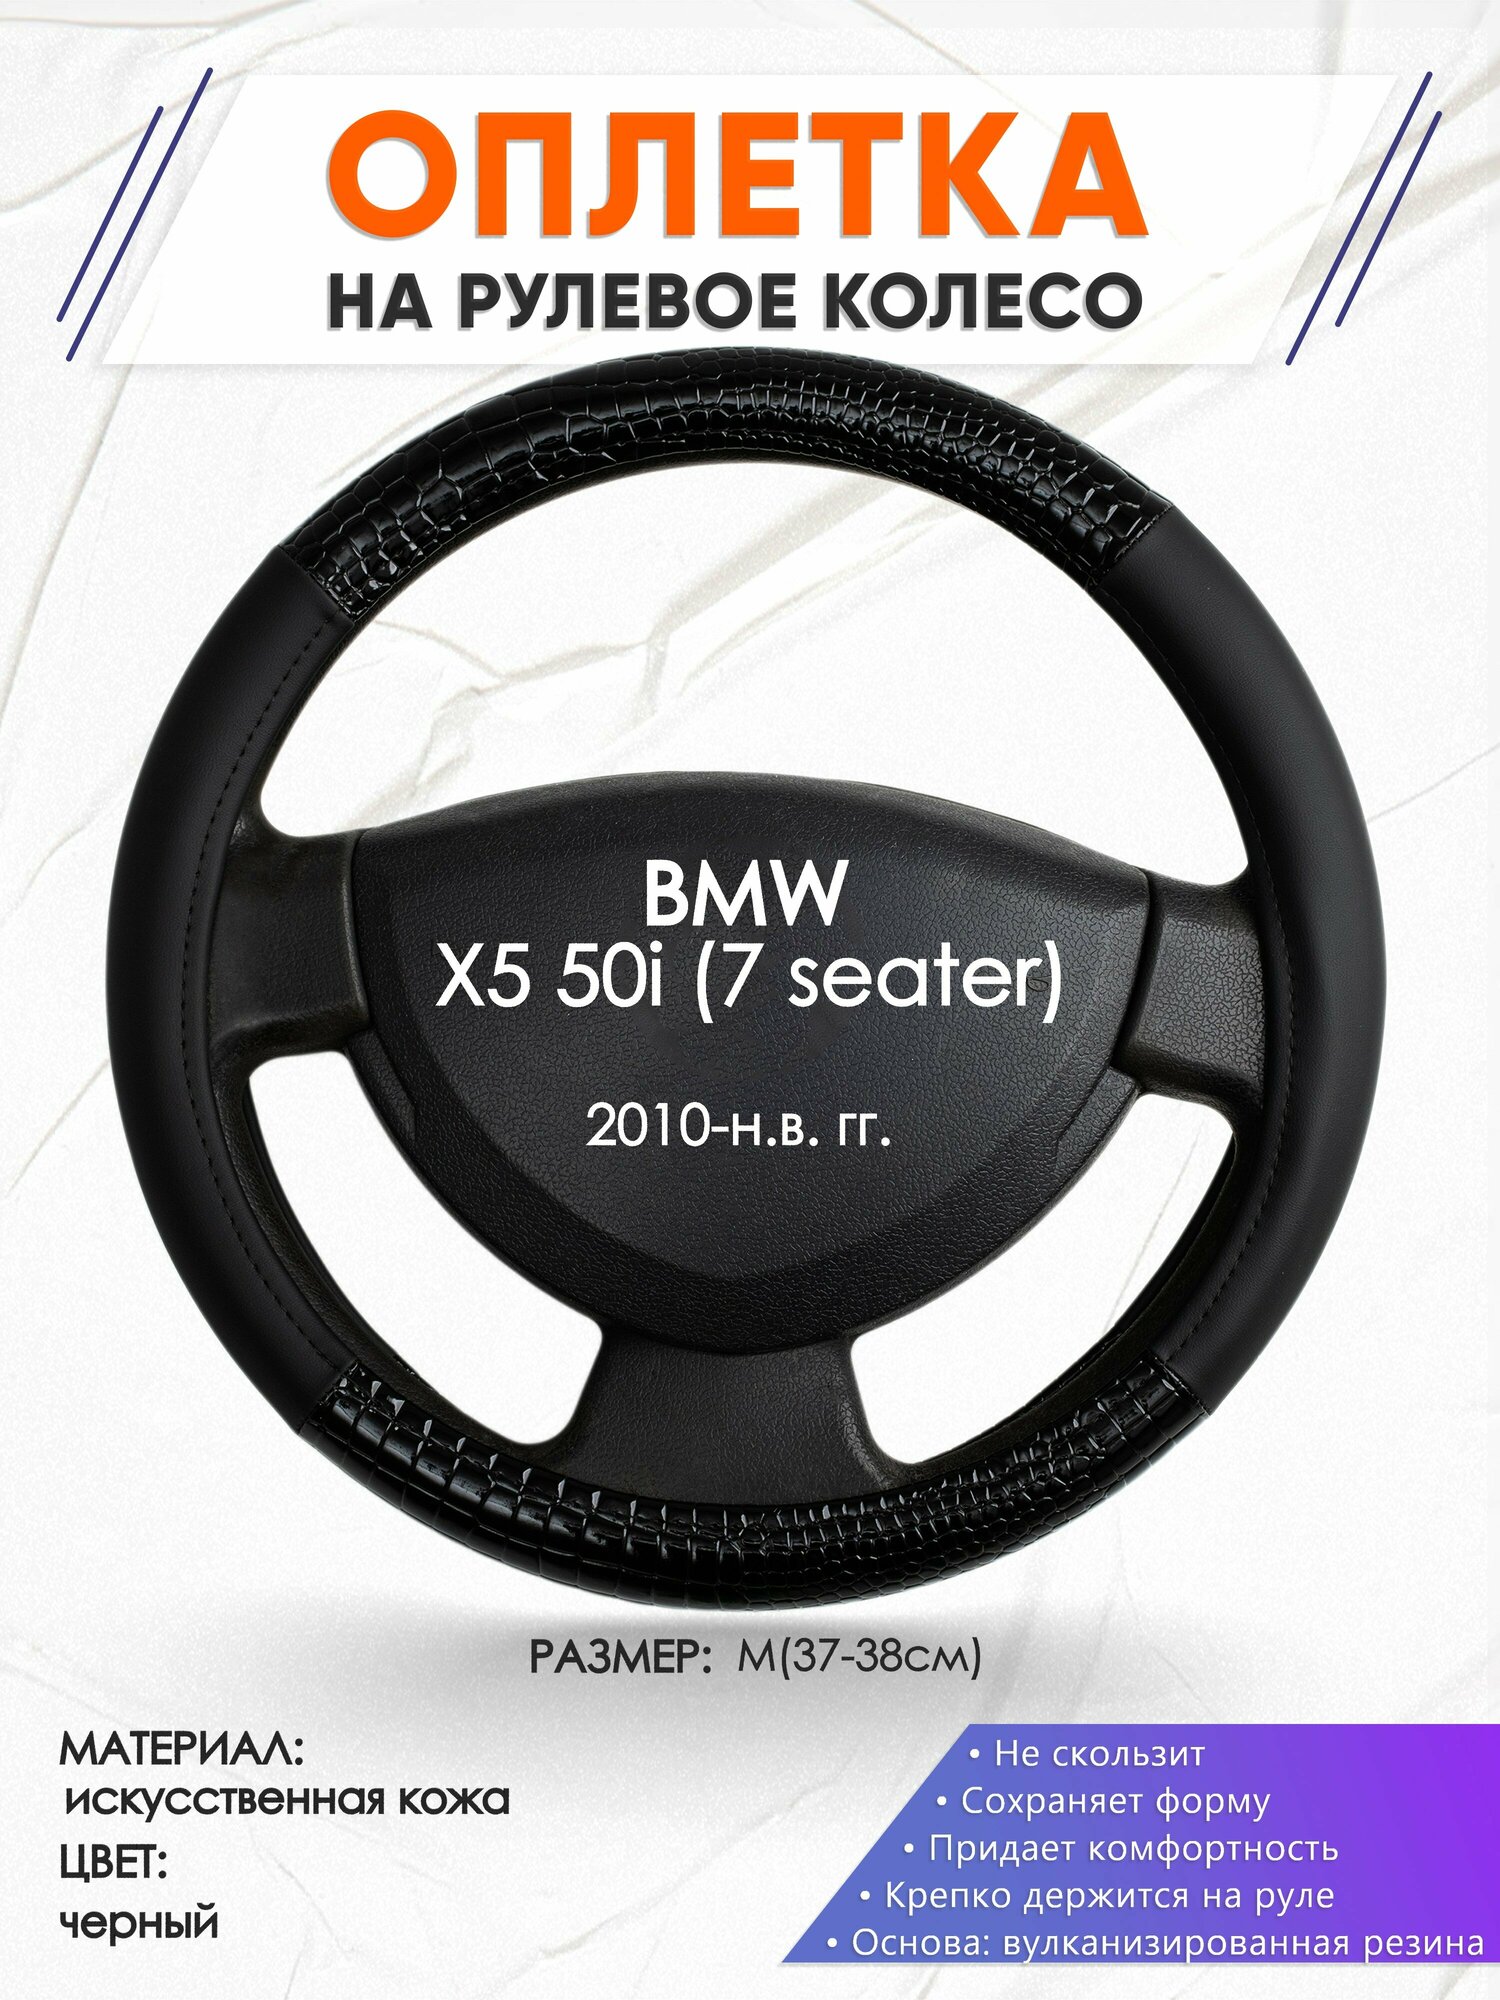 Оплетка наруль для BMW X5 50i (7 seater)(Бмв икс5) 2010-н. в. годов выпуска, размер M(37-38см), Искусственная кожа 83